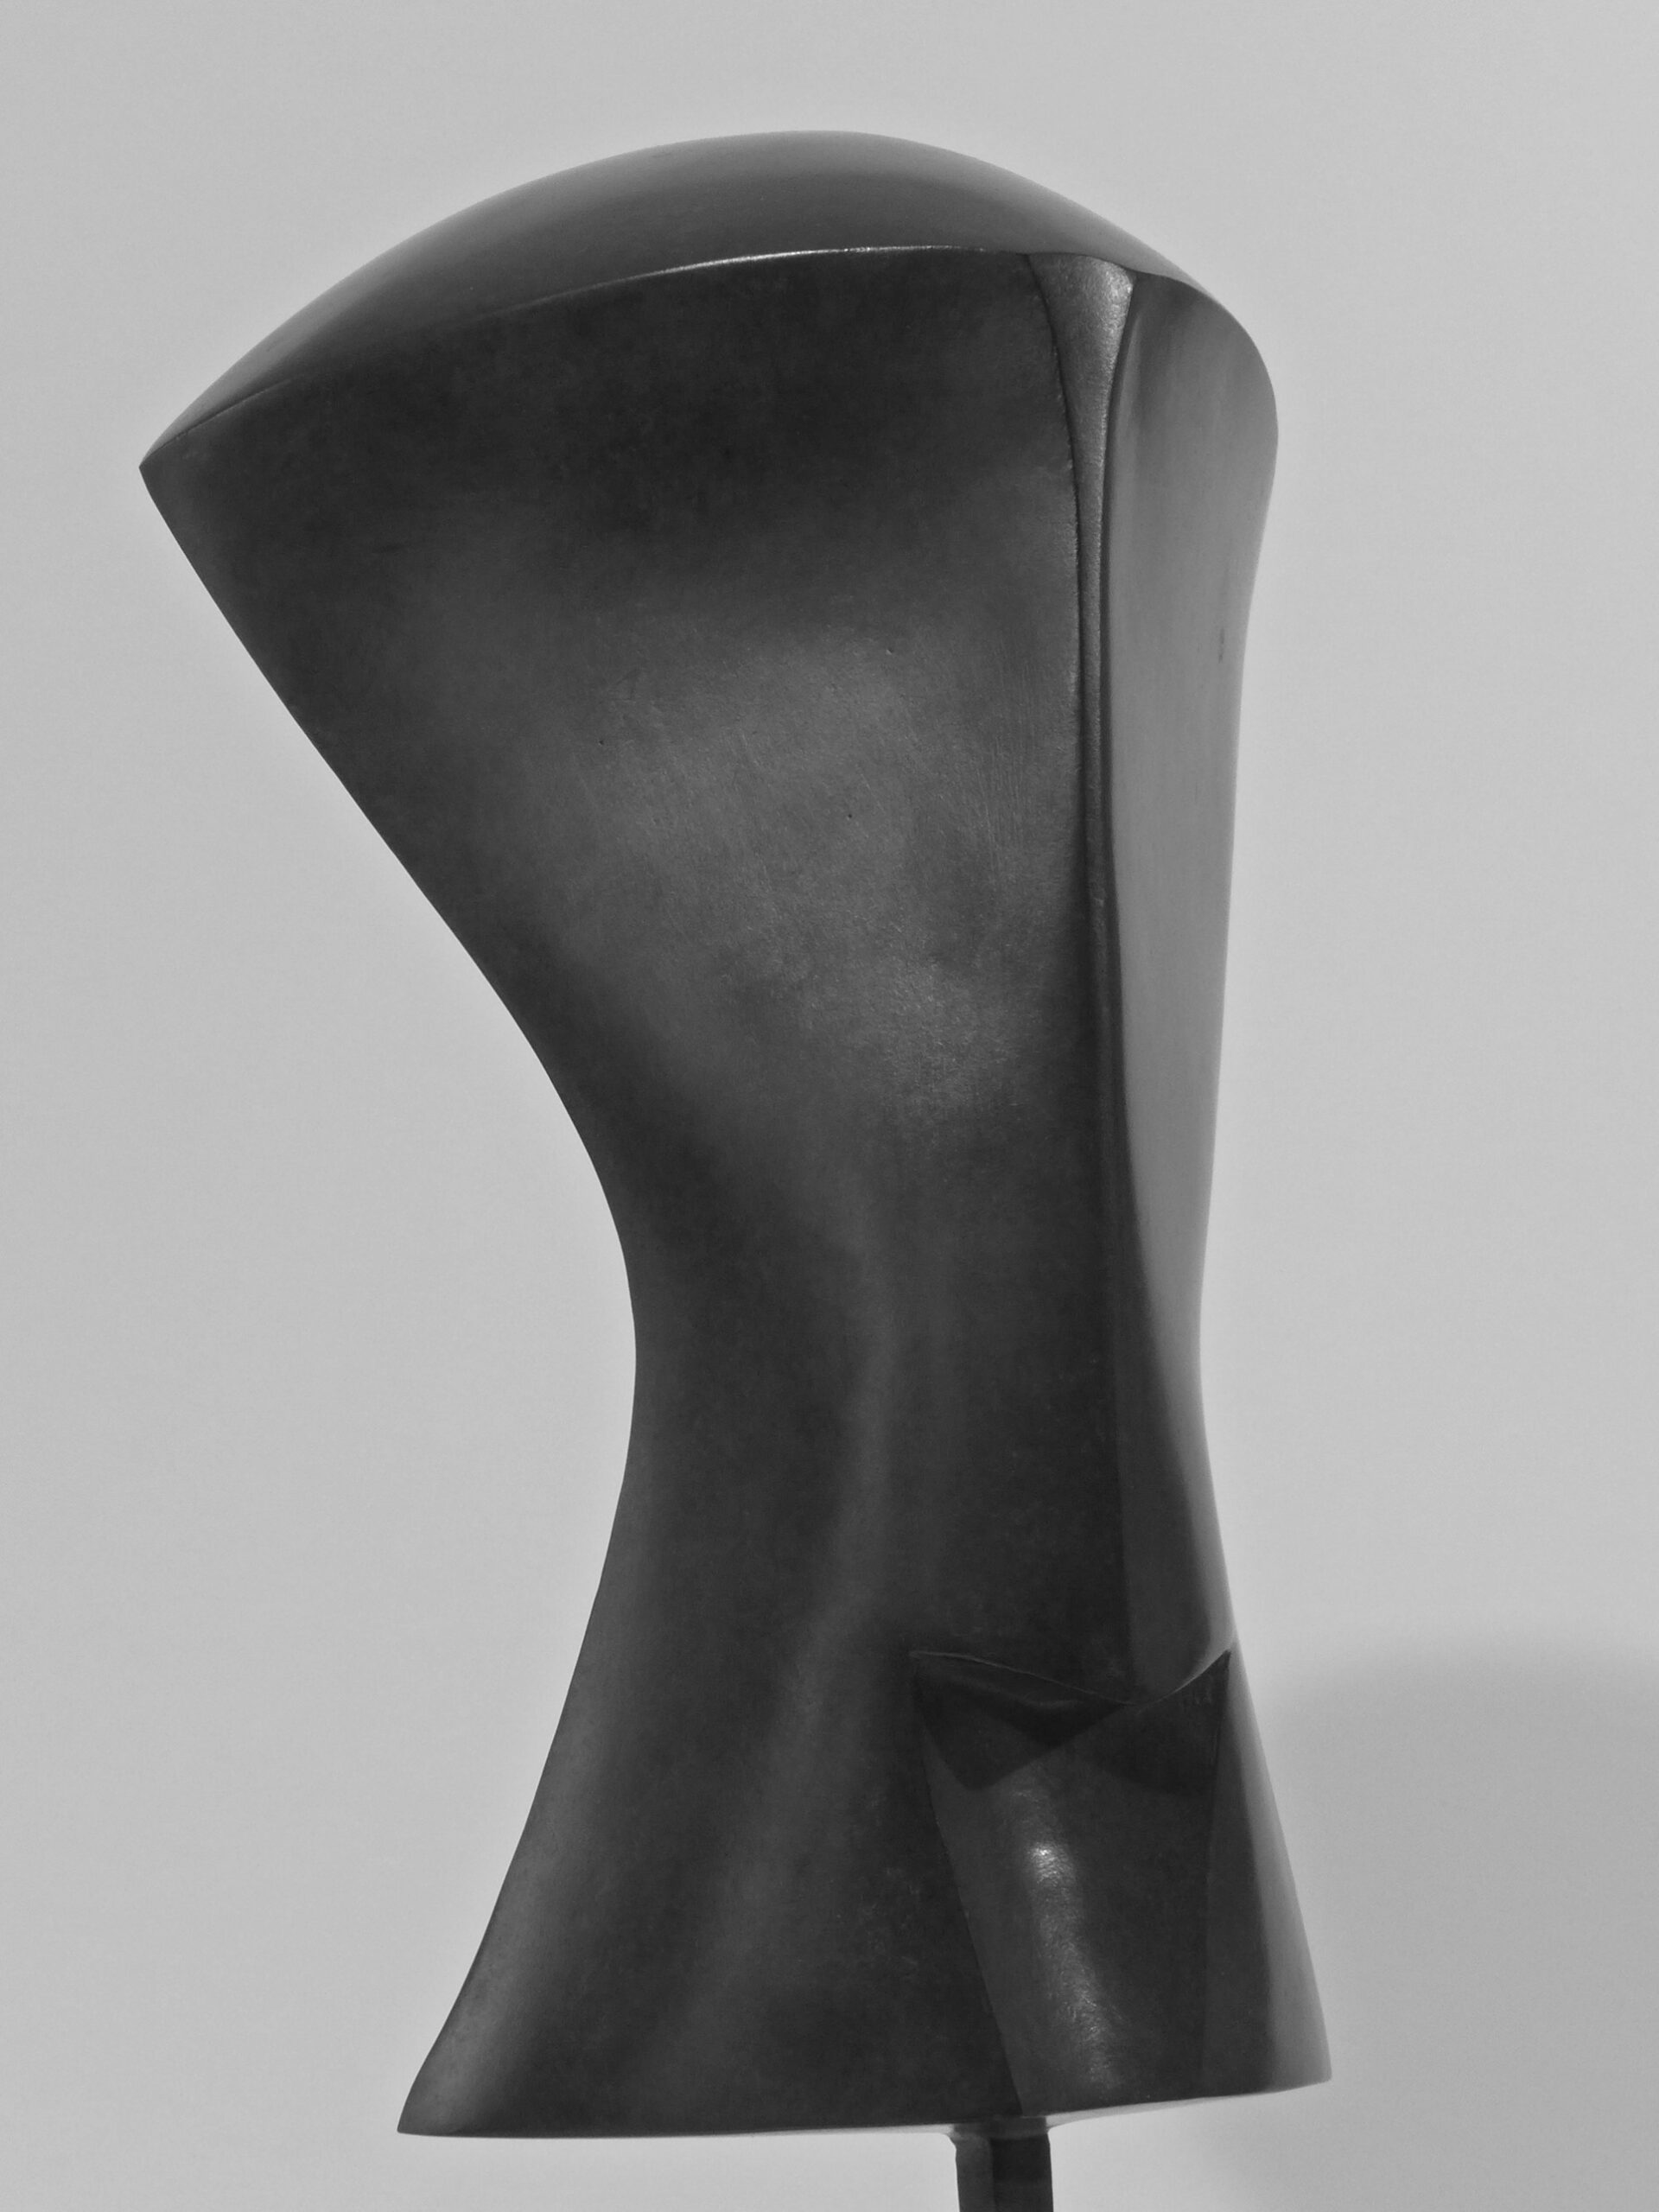 2 L’Orgueil, 1986, bronze, h 61,5 cm